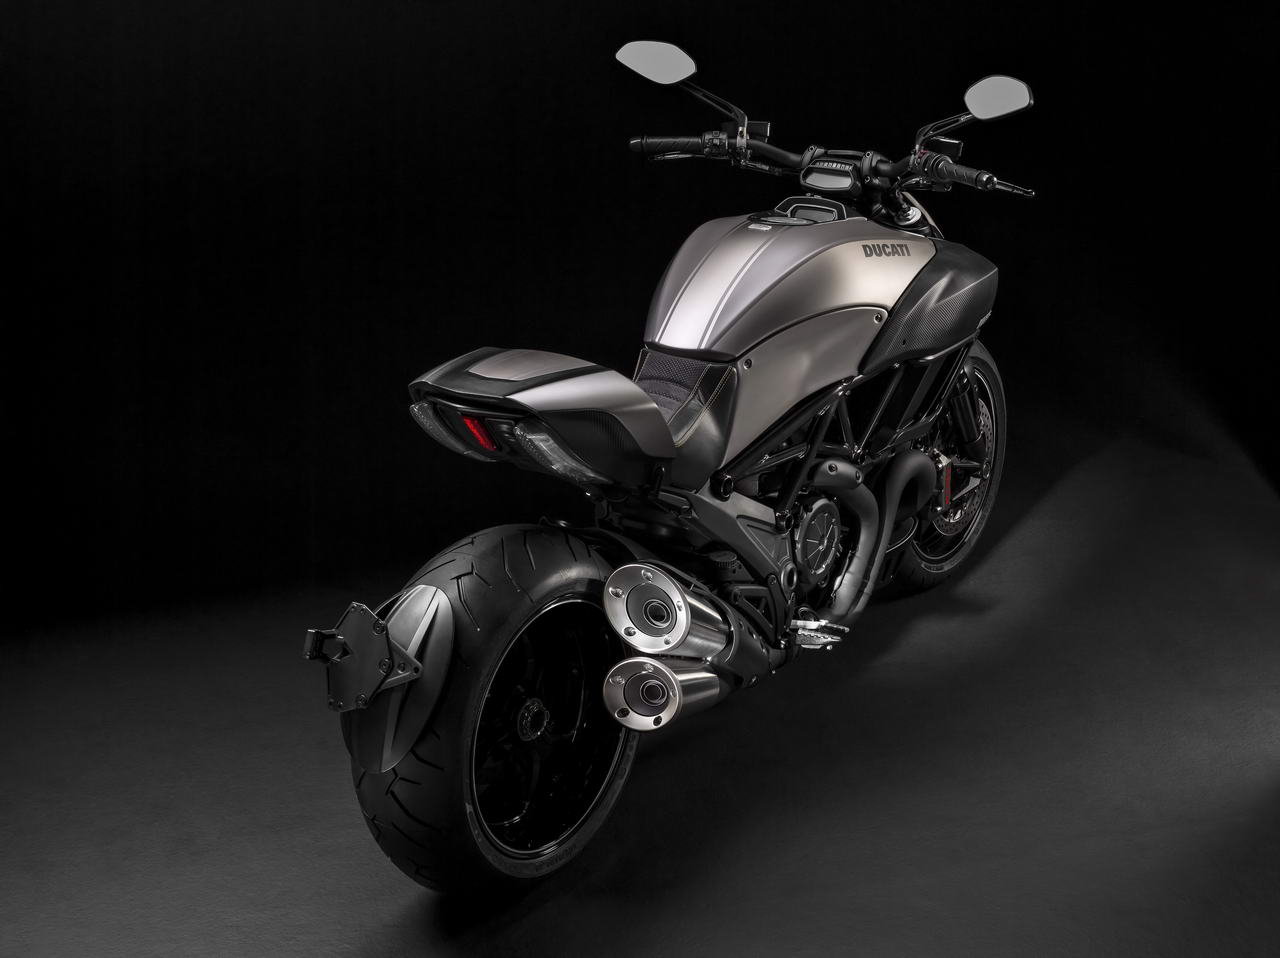 Listino Ducati Diavel Entry Model Naked - image 13247_1 on https://moto.motori.net